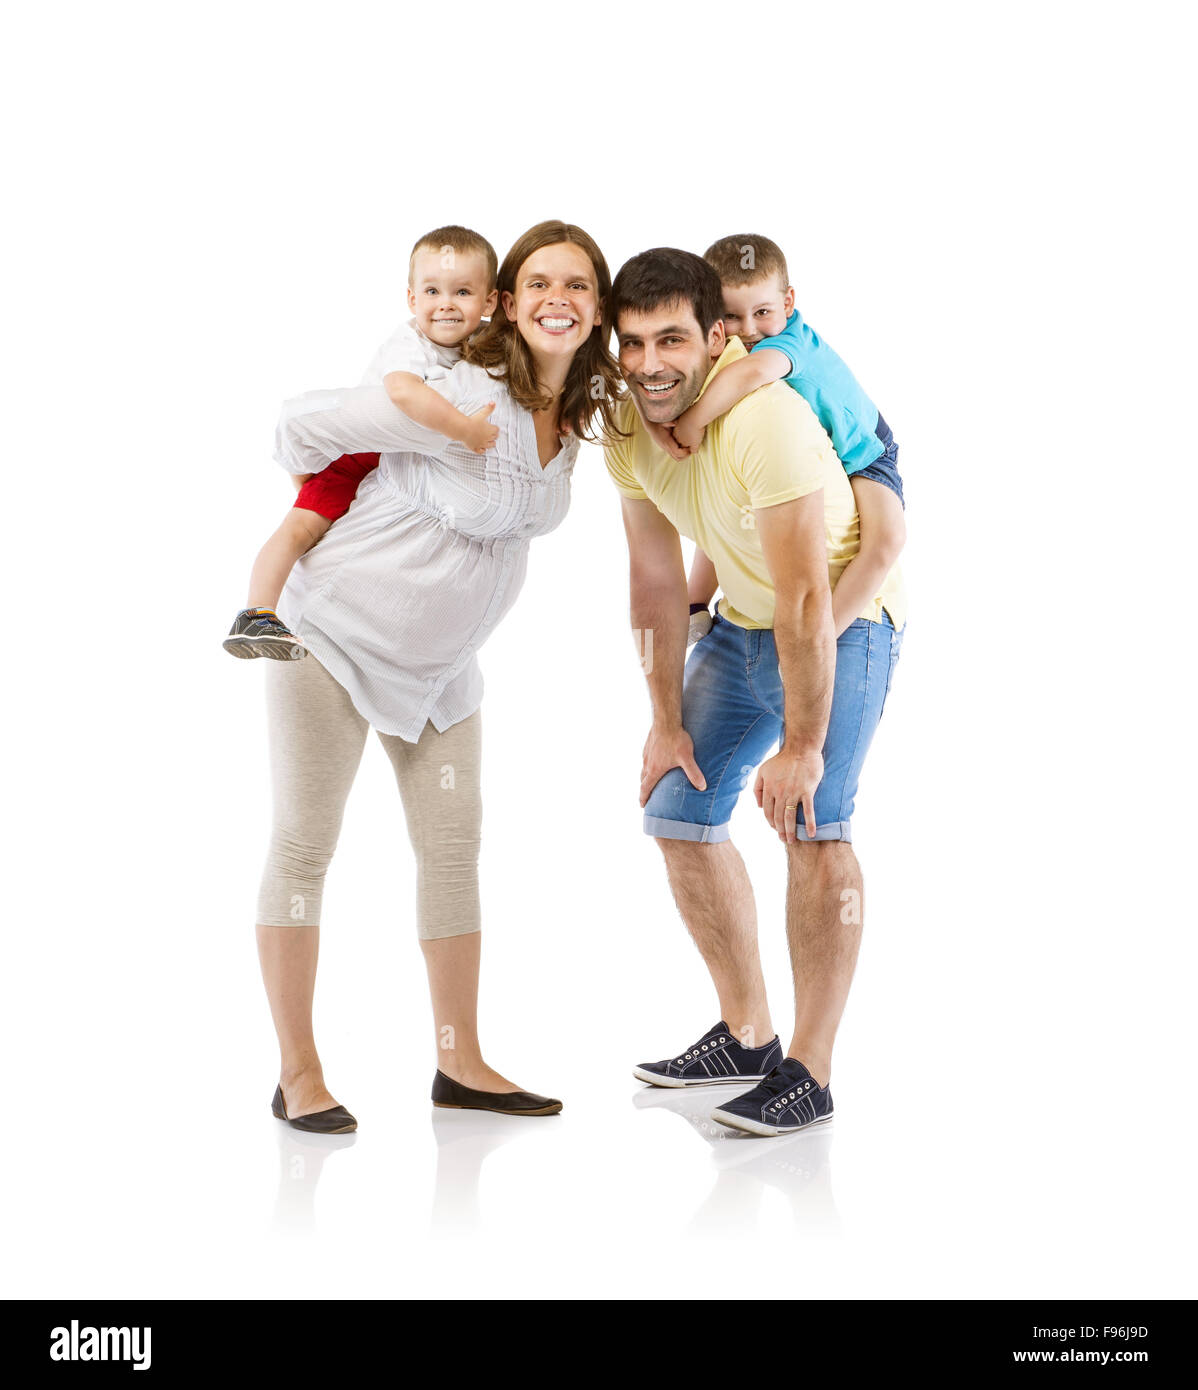 Portrait de l'heureuse famille avec deux enfants et femme enceinte, isolé sur fond blanc Banque D'Images